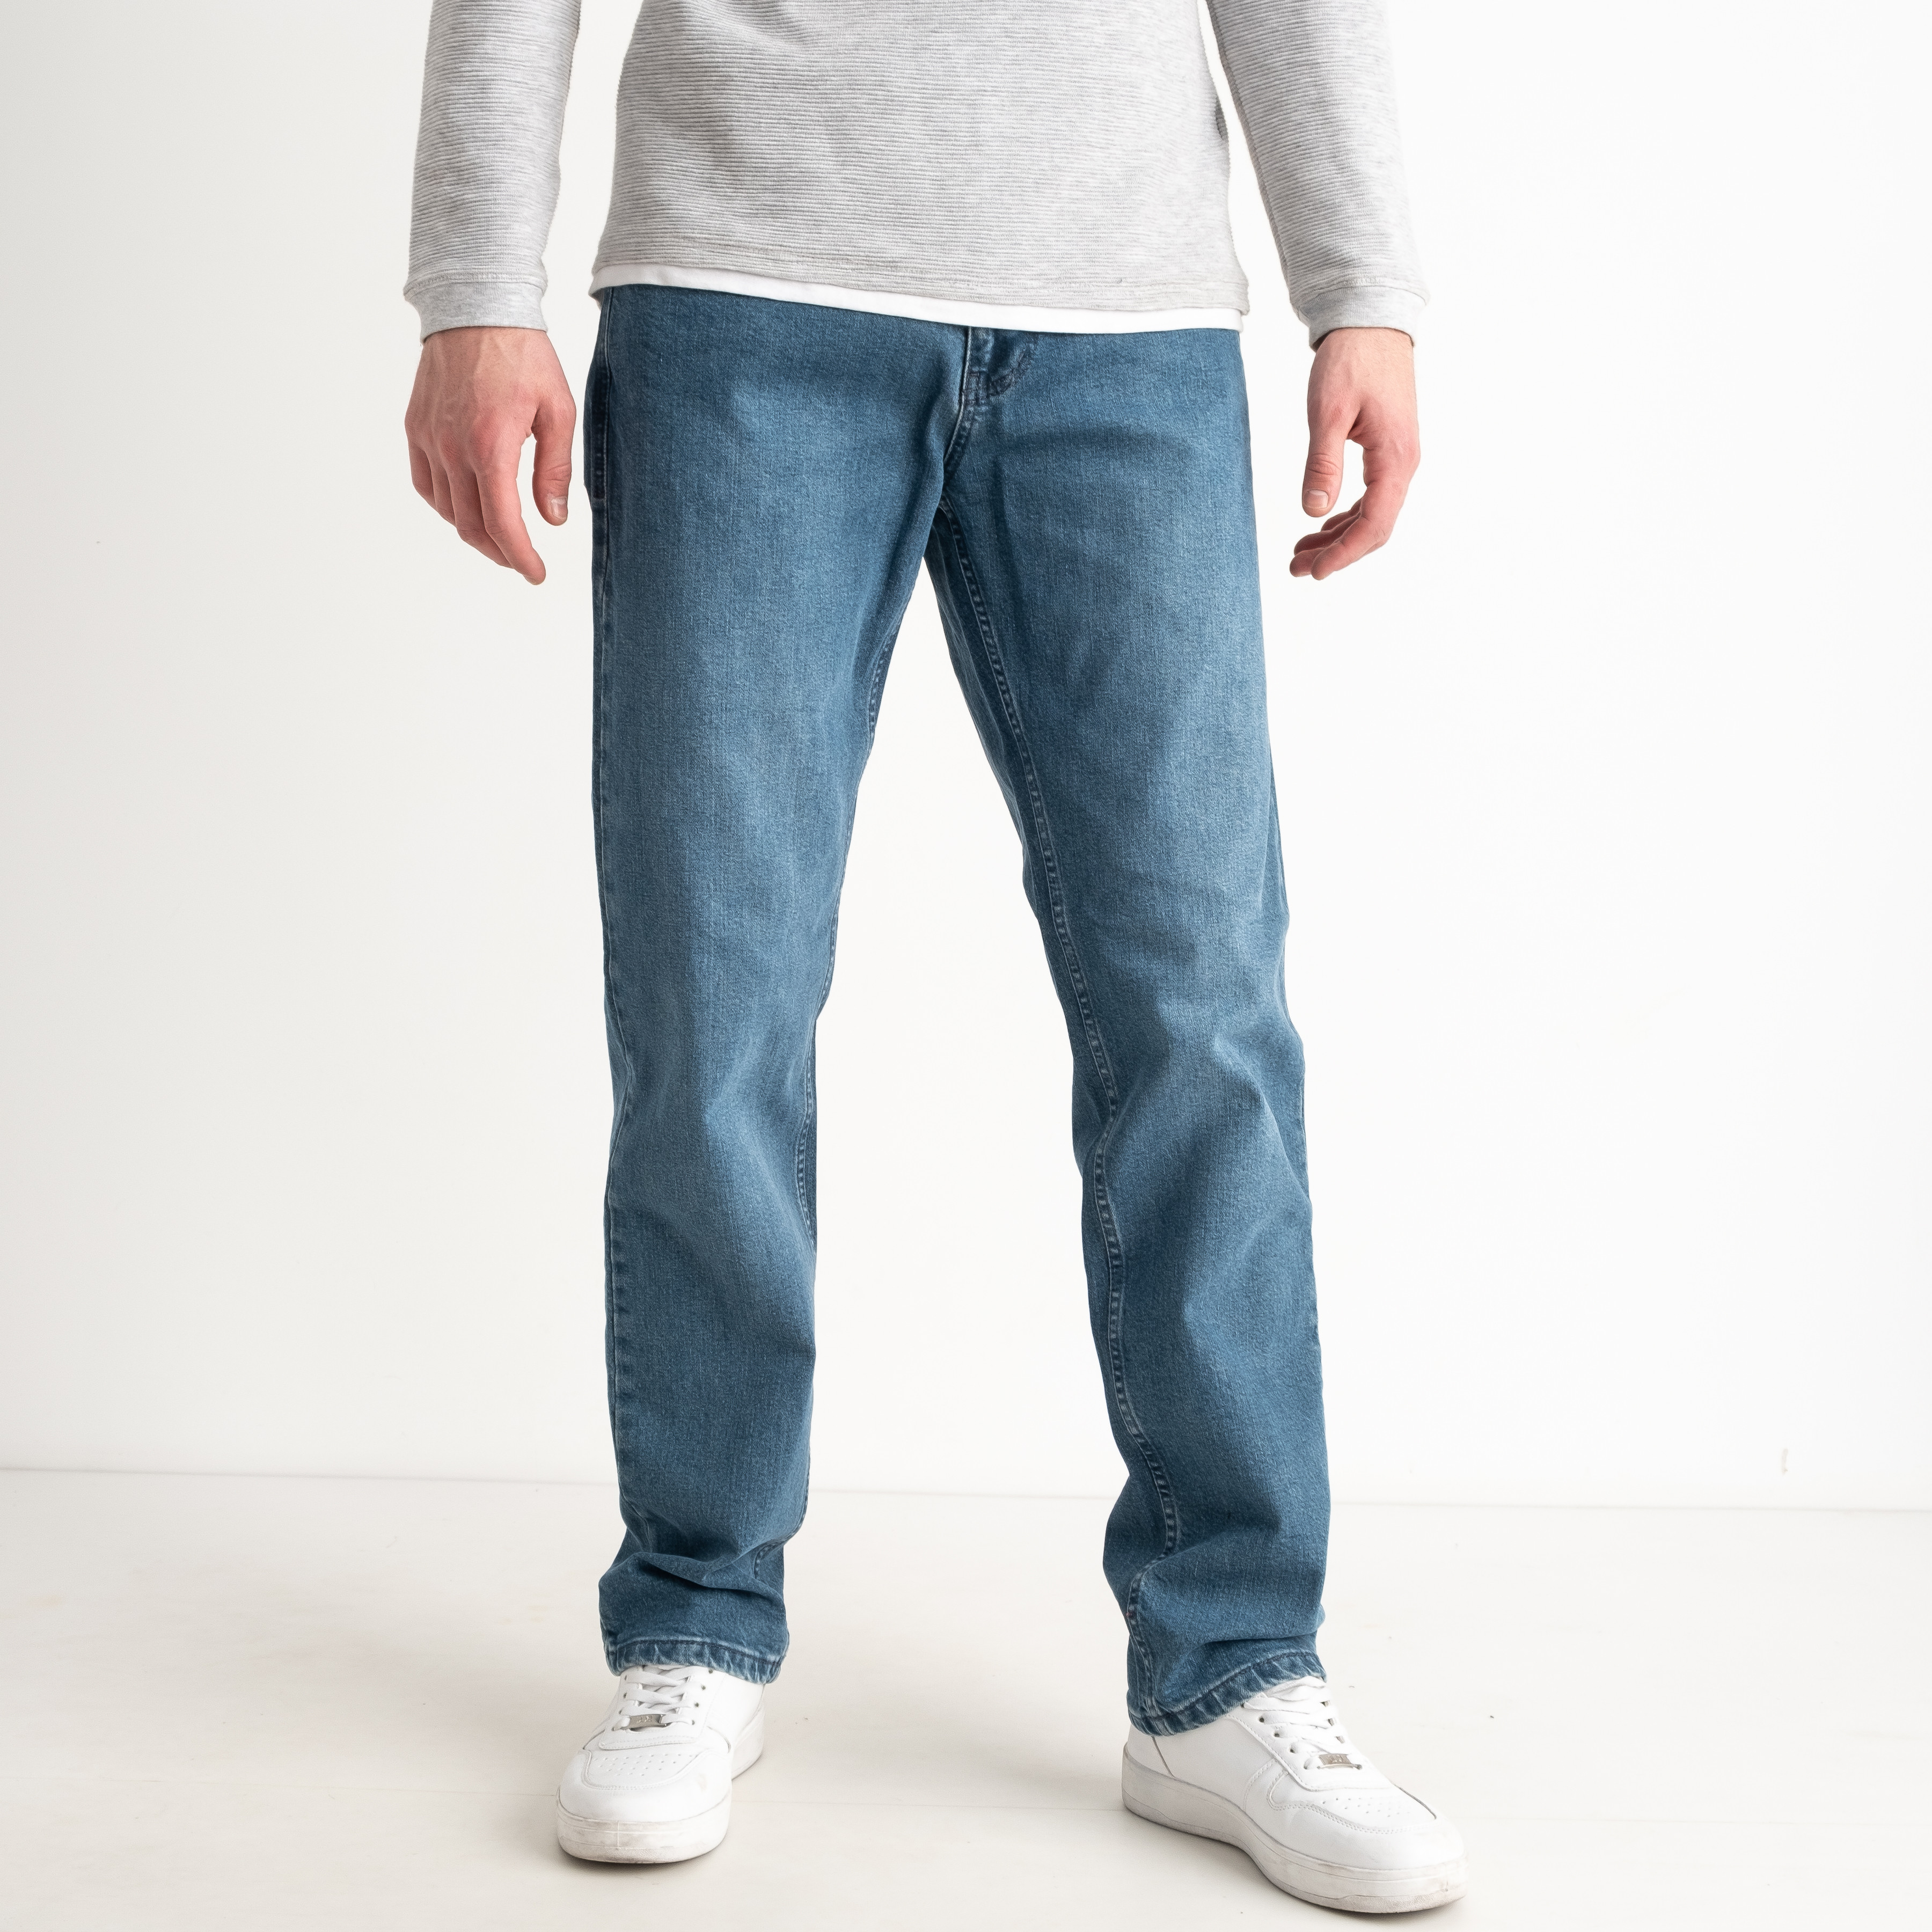 2031-1 синие мужские джинсы (стрейчевые, 8 ед. размеры норма: 31. 32. 33. 33. 34. 34. 36. 38)